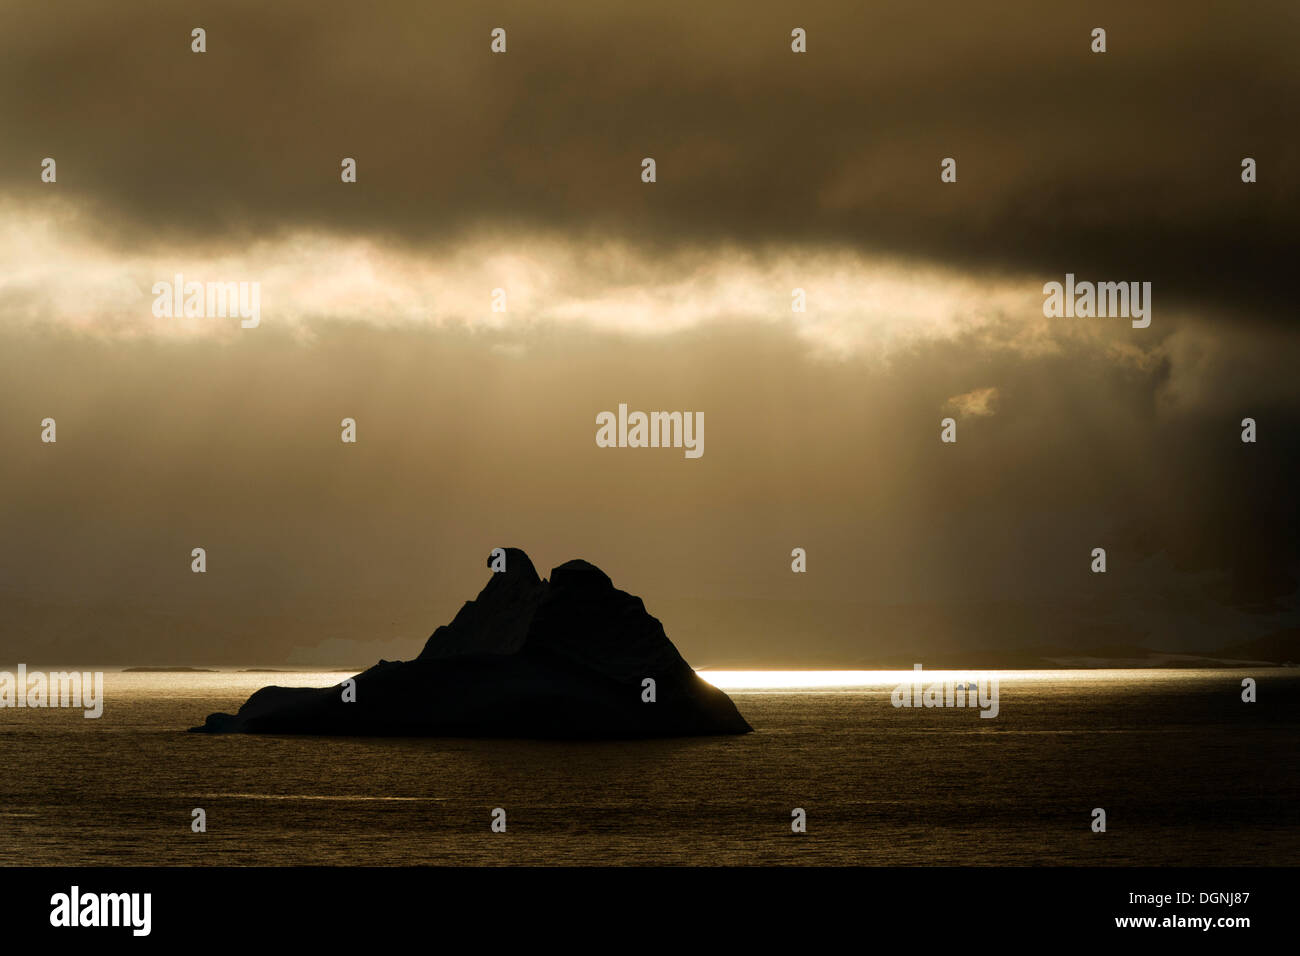 La lumière du soleil qui brillait à travers un trou dans les nuages, silhouette d'un iceberg à l'avant, le Canal Errera, péninsule Arctowski Banque D'Images